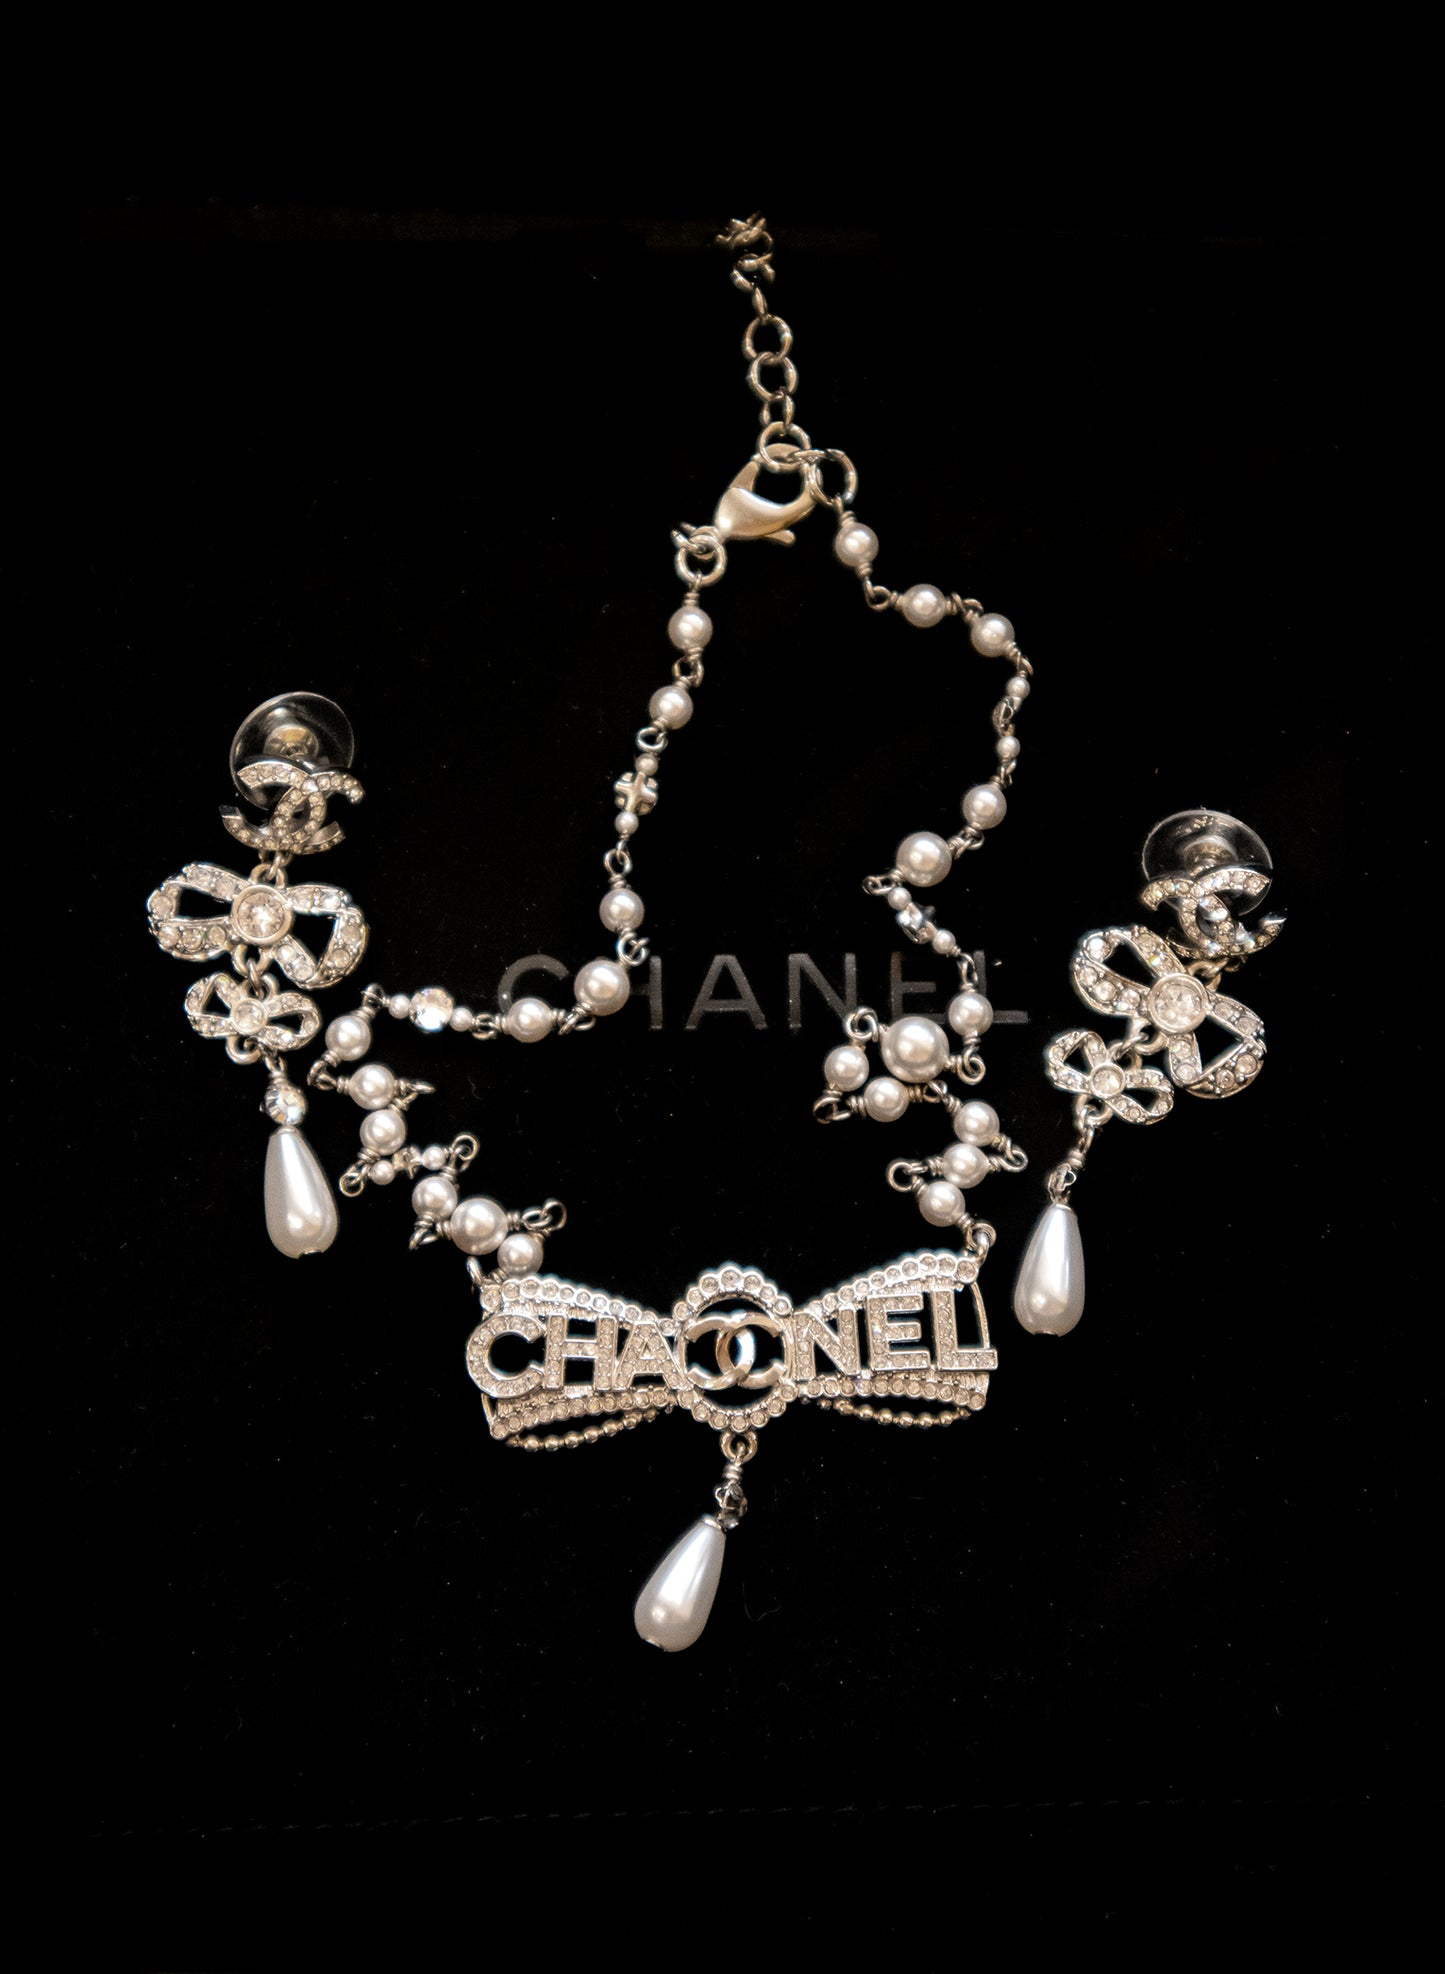 Chanel - Vintage Schmuckset silber - Collier und Ohrringe  hängend